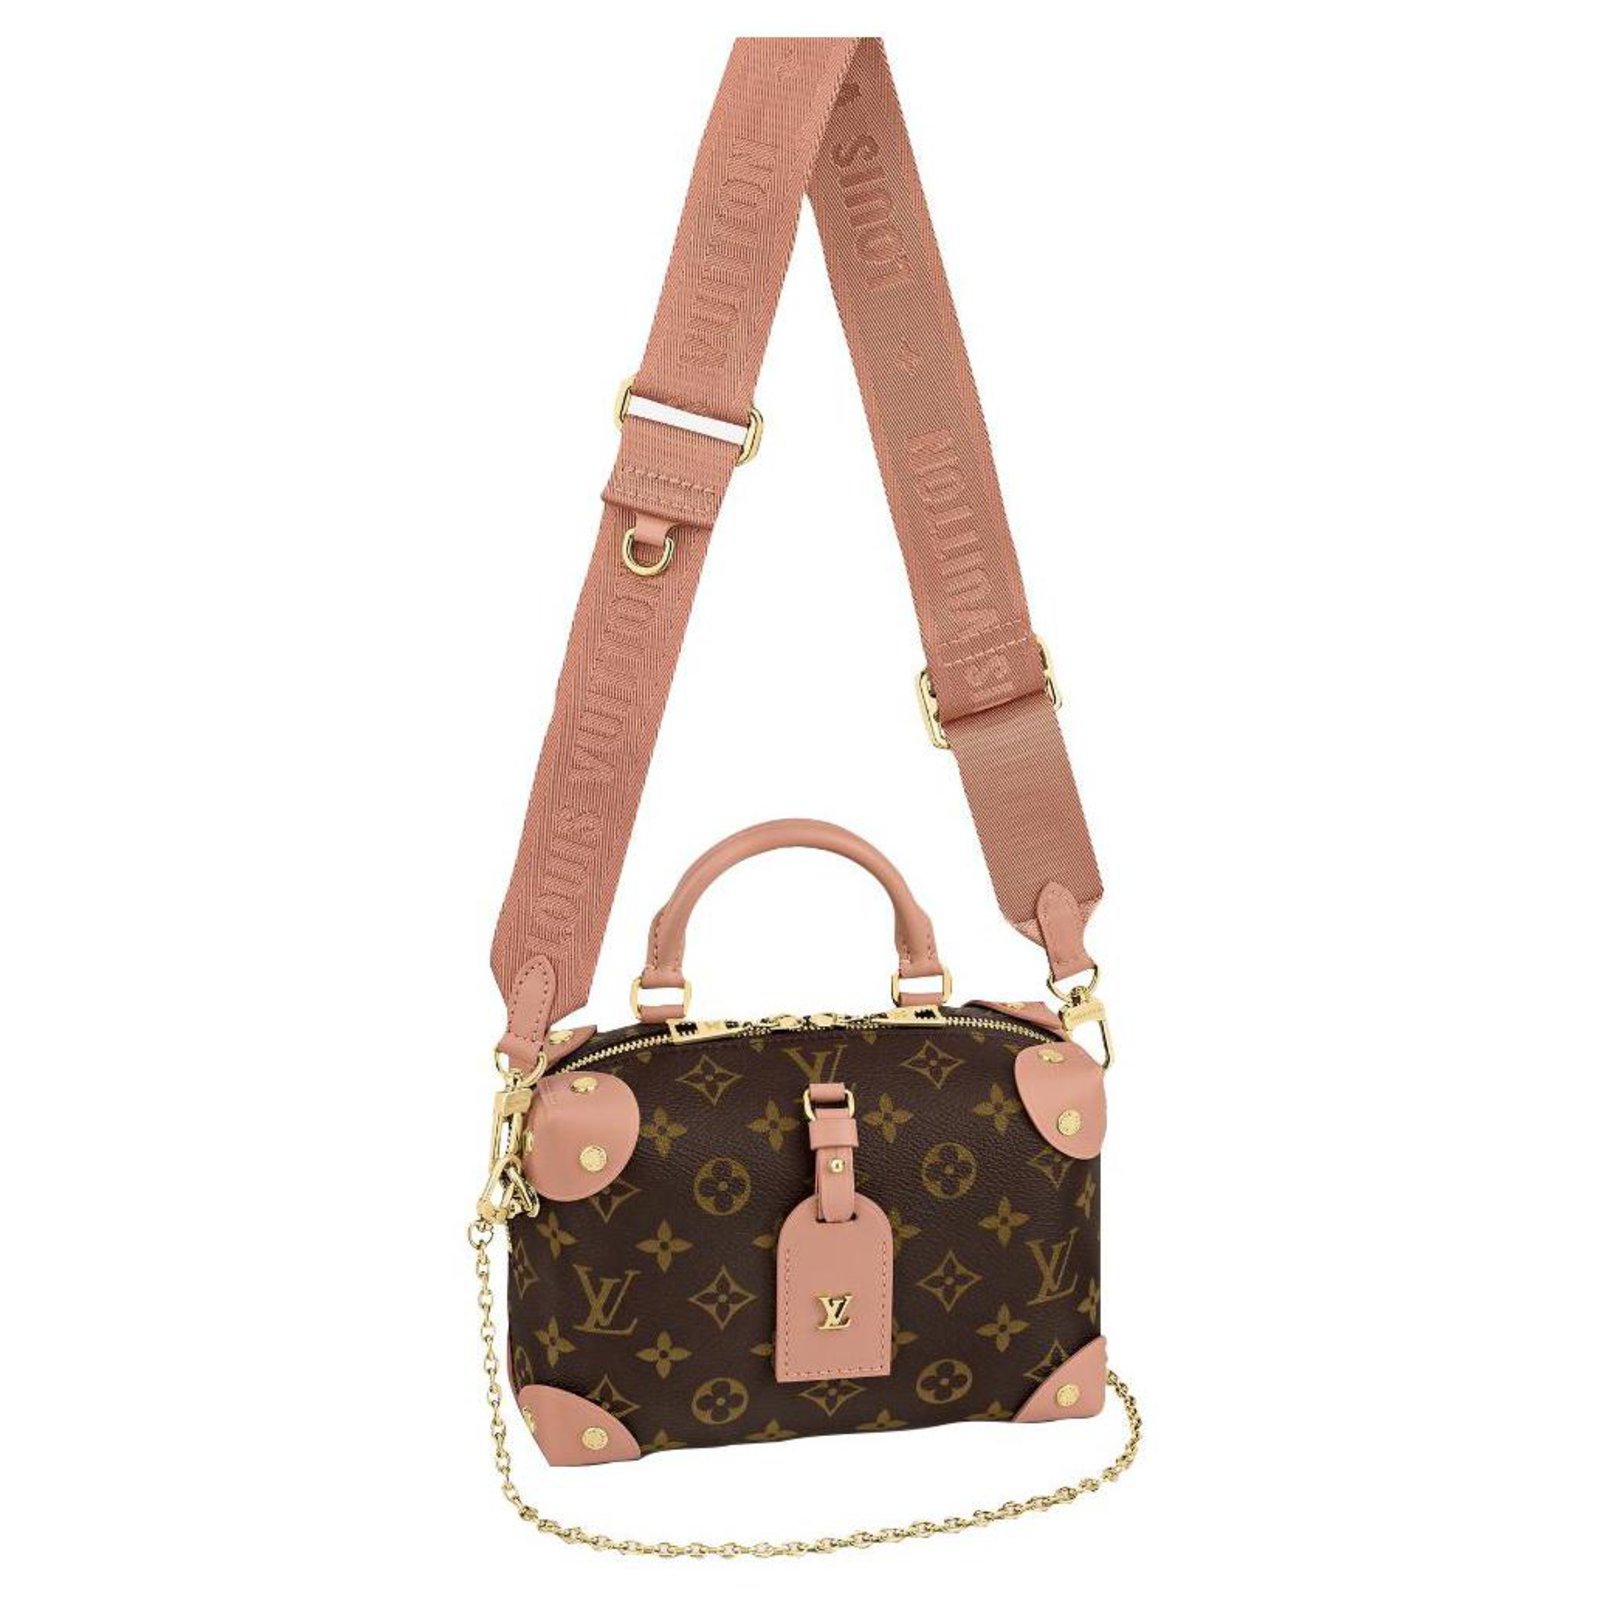 Louis Vuitton Petite Malle Souple Handbag Monogram Canvas Brown